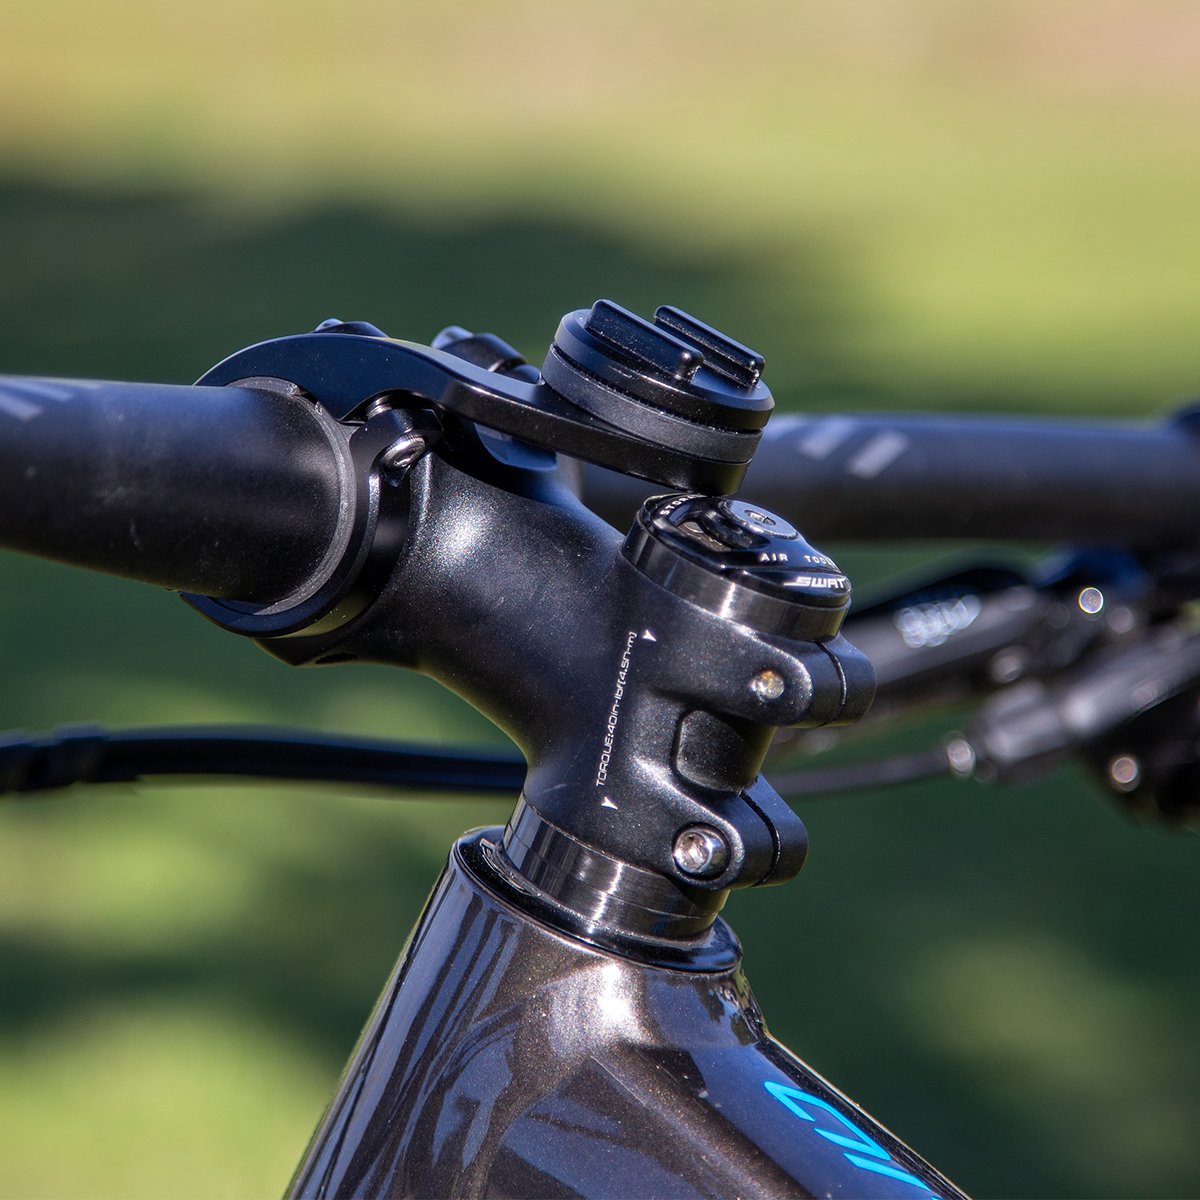 SP Connect Bike Bundle II Coque support vélo étanche iPhone et Samsung